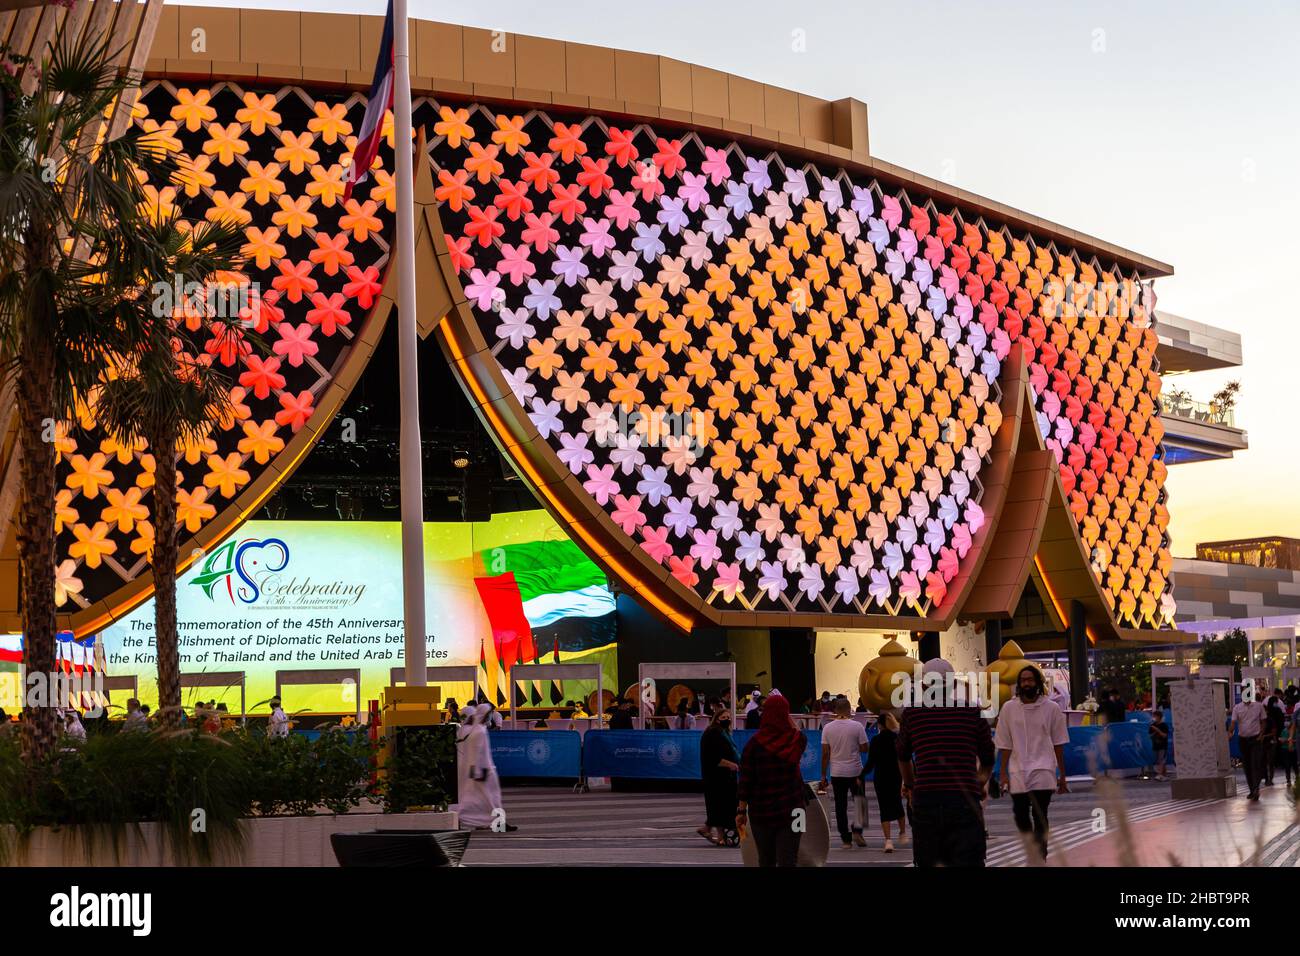 Dubai, UAE, 09.12.2021. Thailand Pavilion at Expo 2020 Dubai with colorful floral pattern illuminated facade. Stock Photo